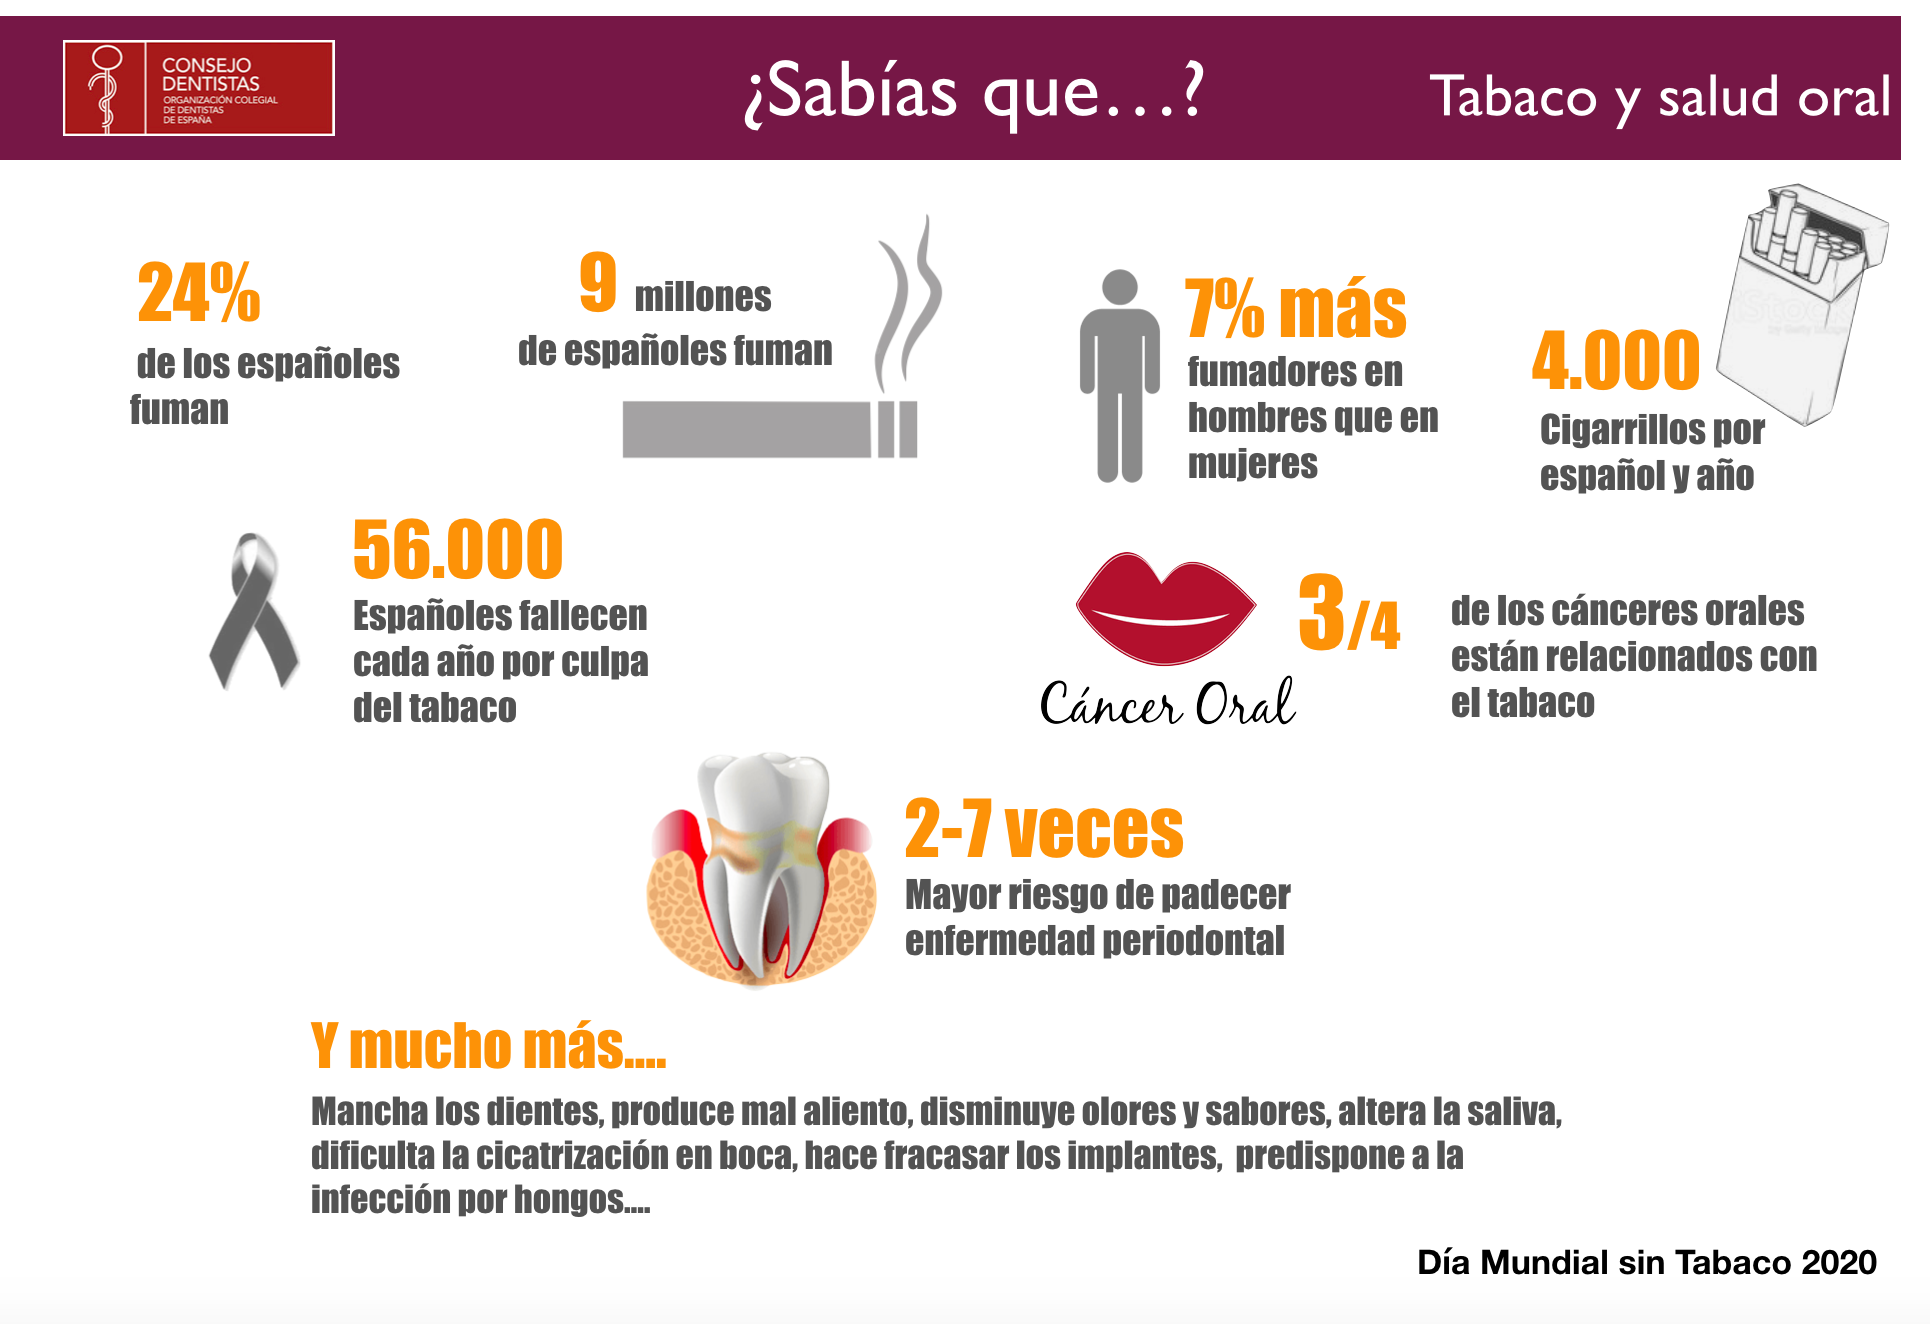 El consumo de tabaco y alcohol es responsable por sí solo de 3 de cada 4 cánceres orales.